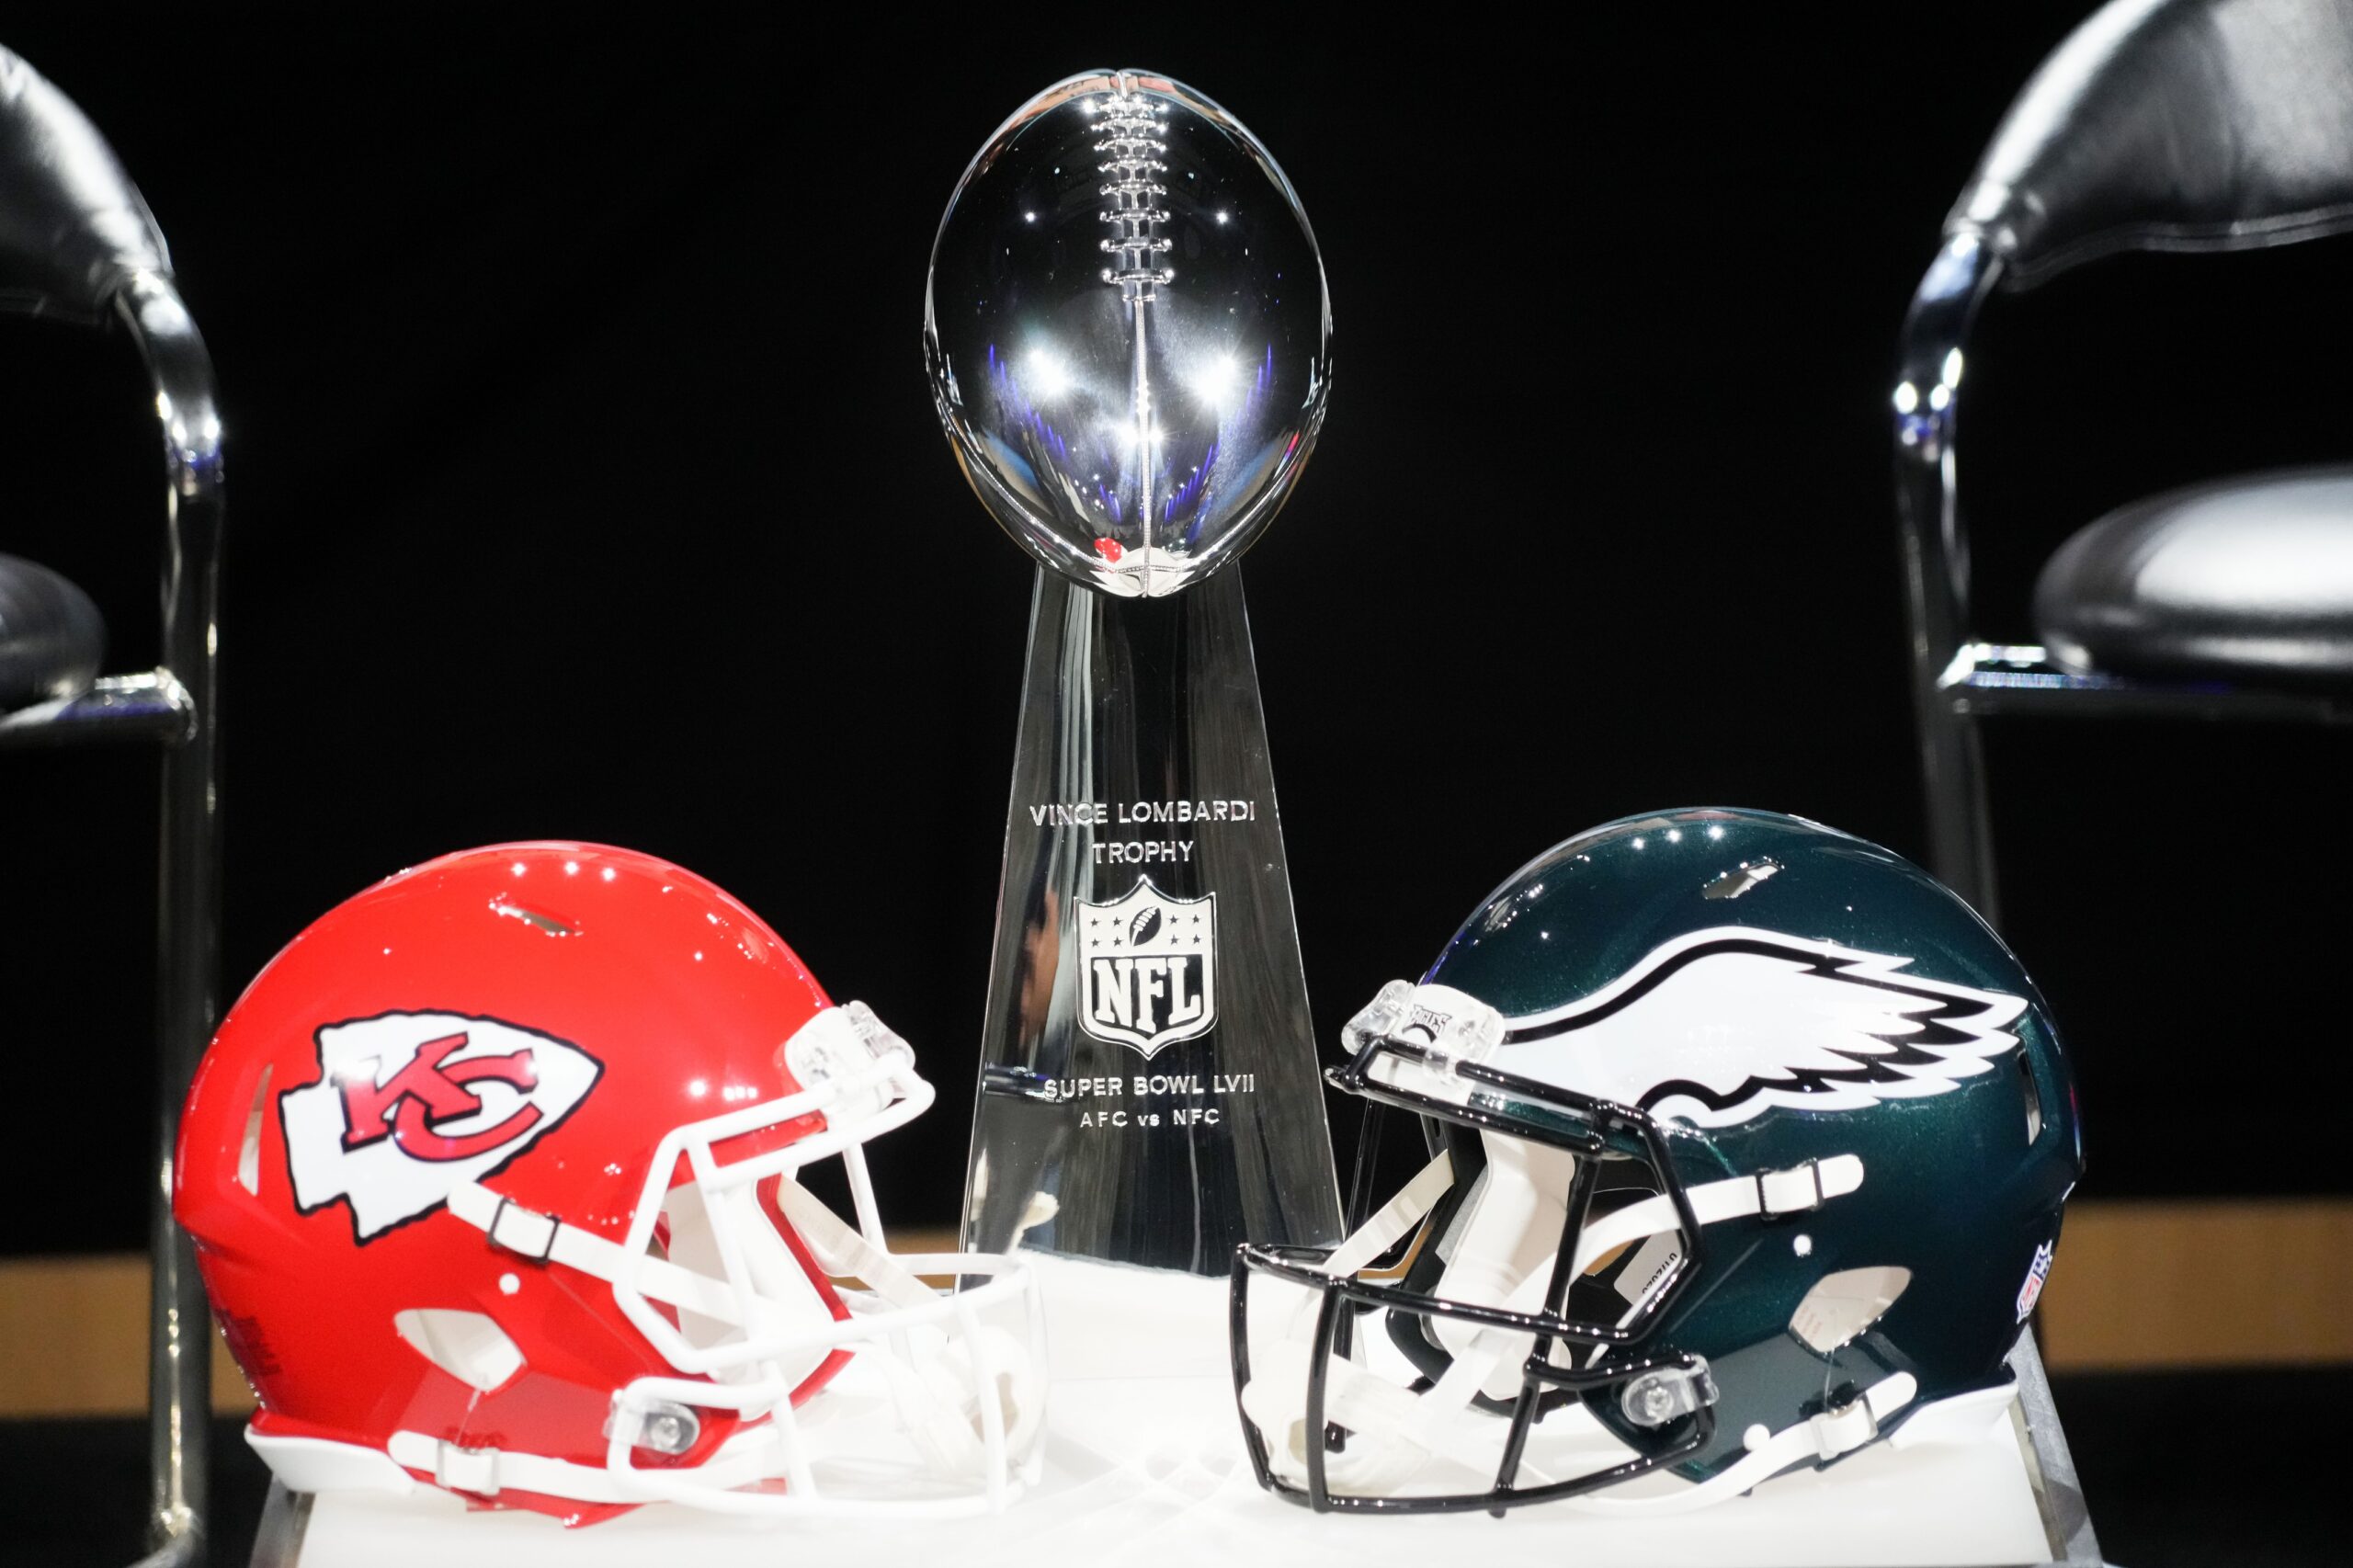 Buffalo Bills vs. Kansas City Chiefs: Matchups, prediction for battle  between AFC juggernauts